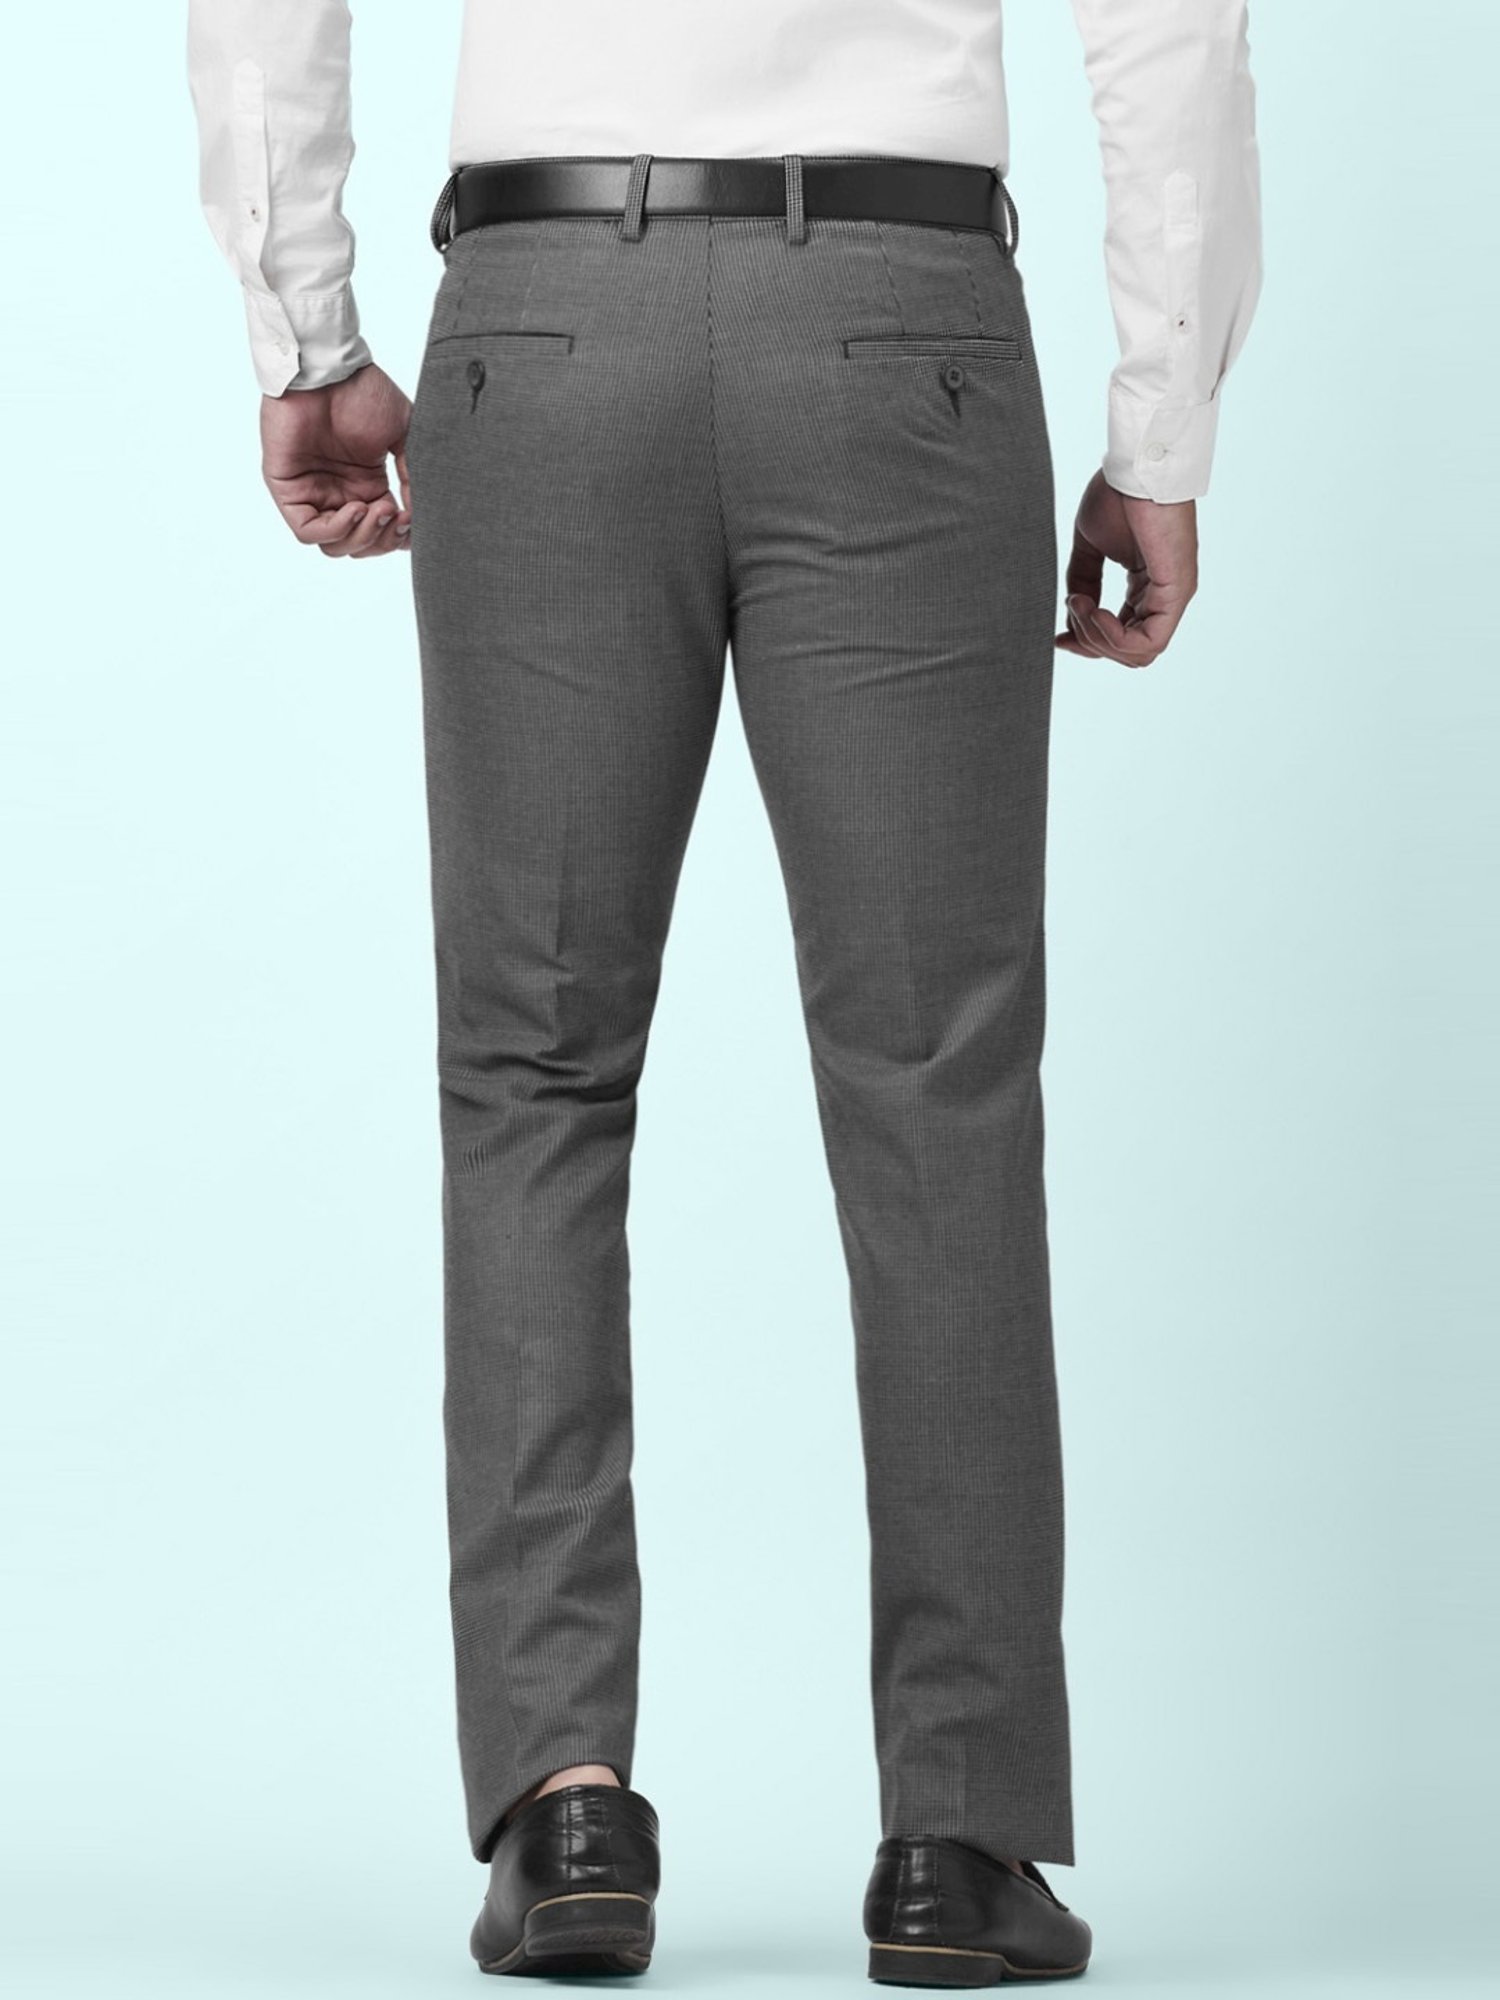 Black Solid Full Length Formal Men Slim Fit Trousers - Selling Fast at  Pantaloons.com